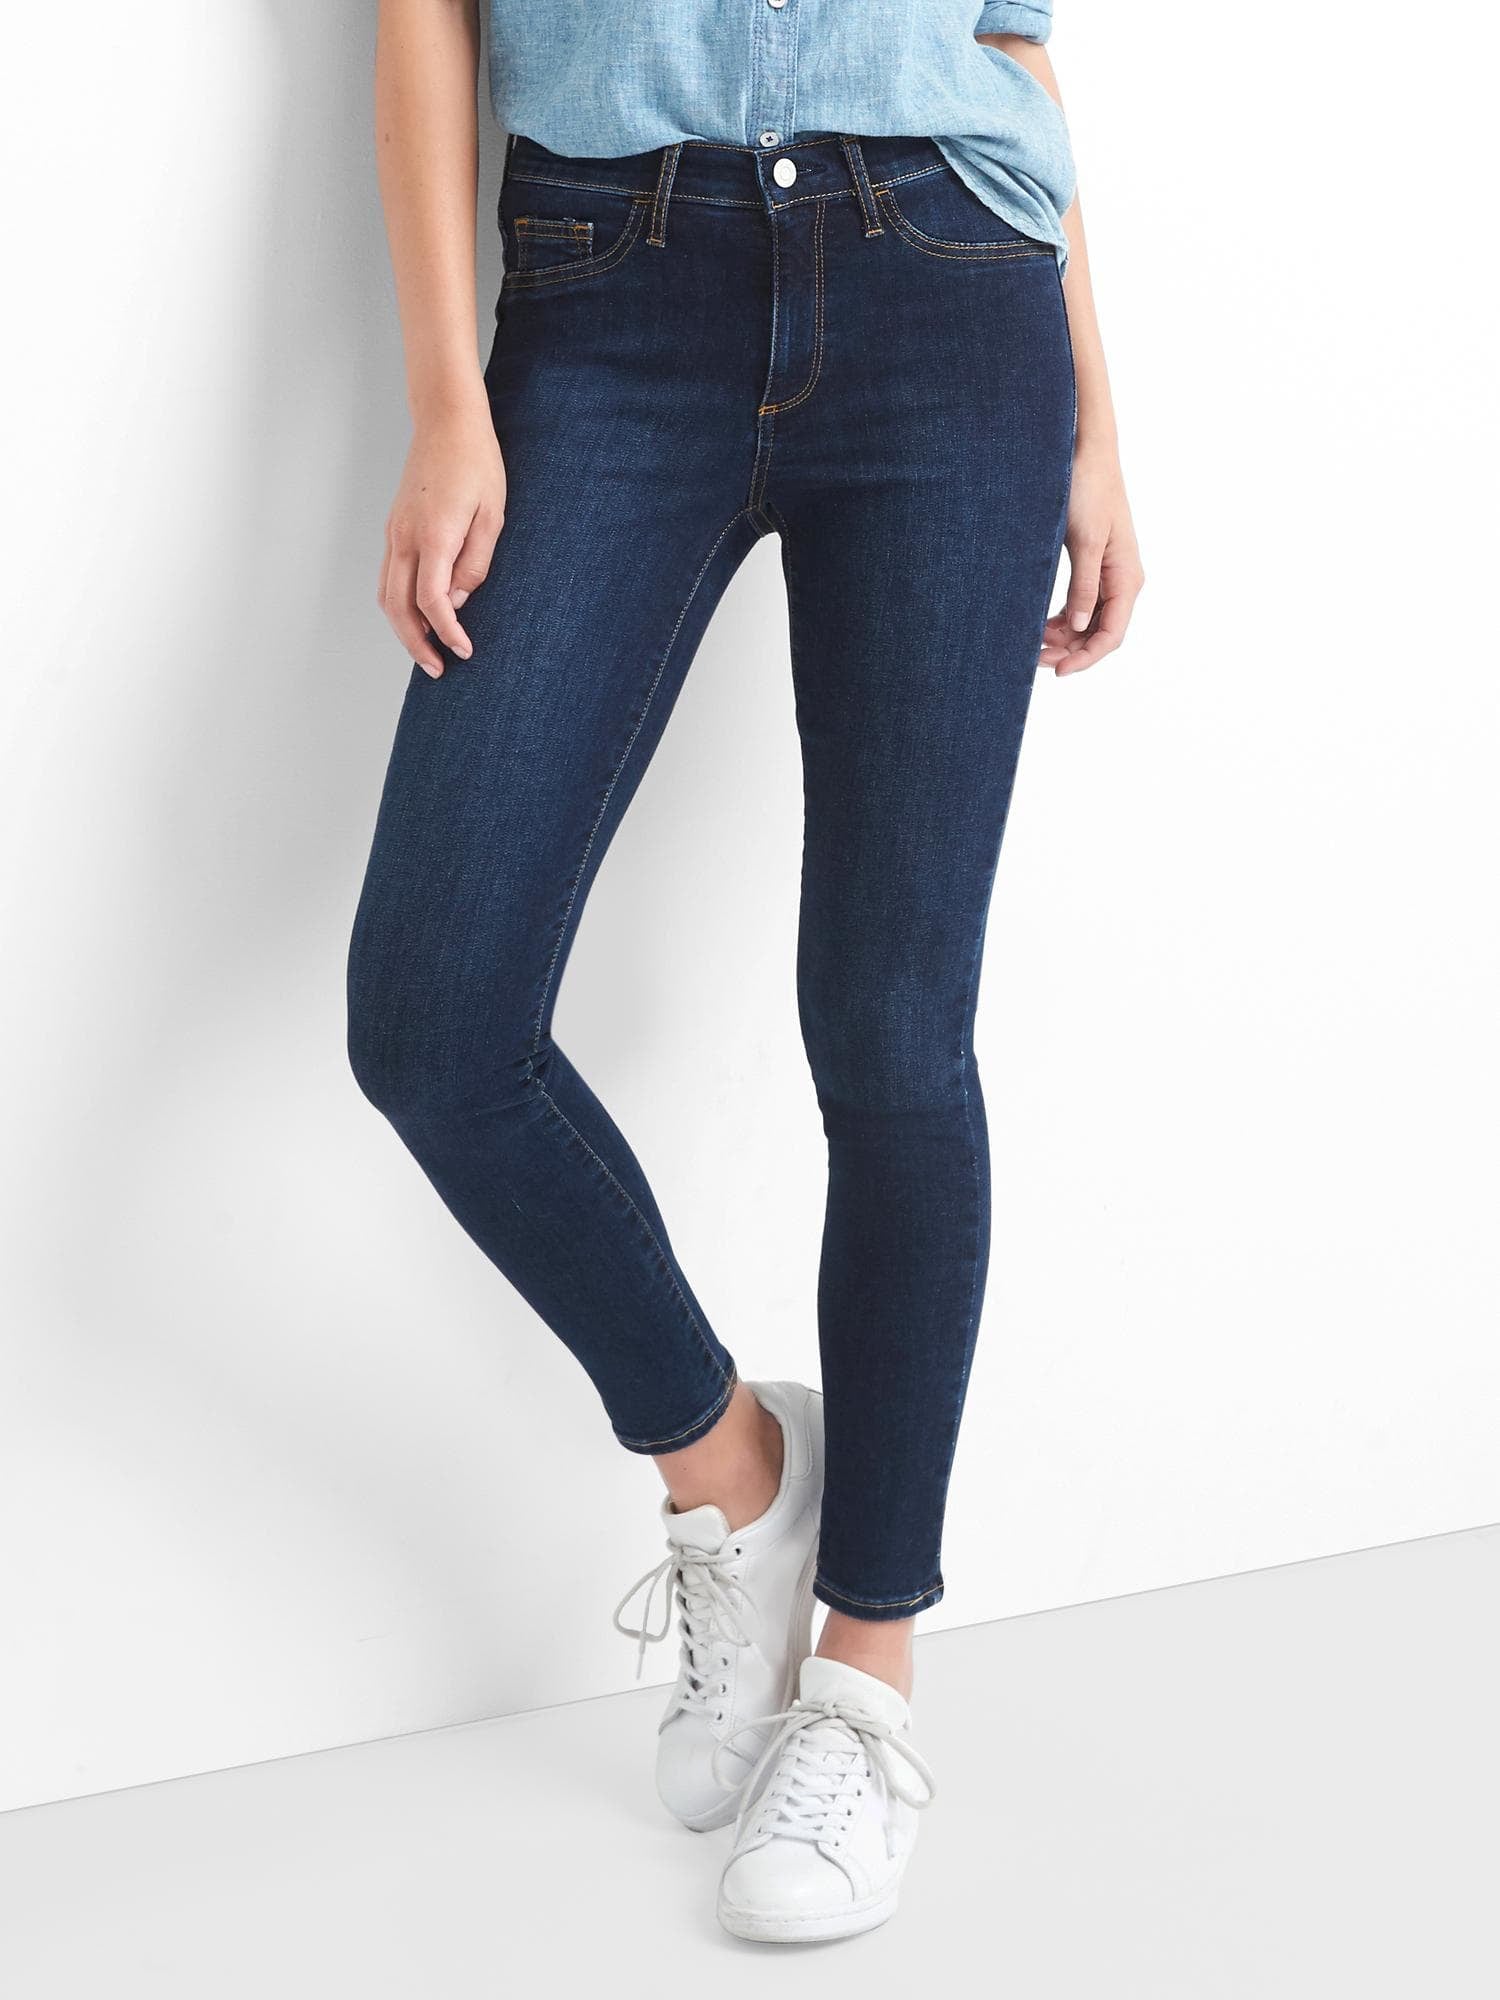 gap easy legging jeans